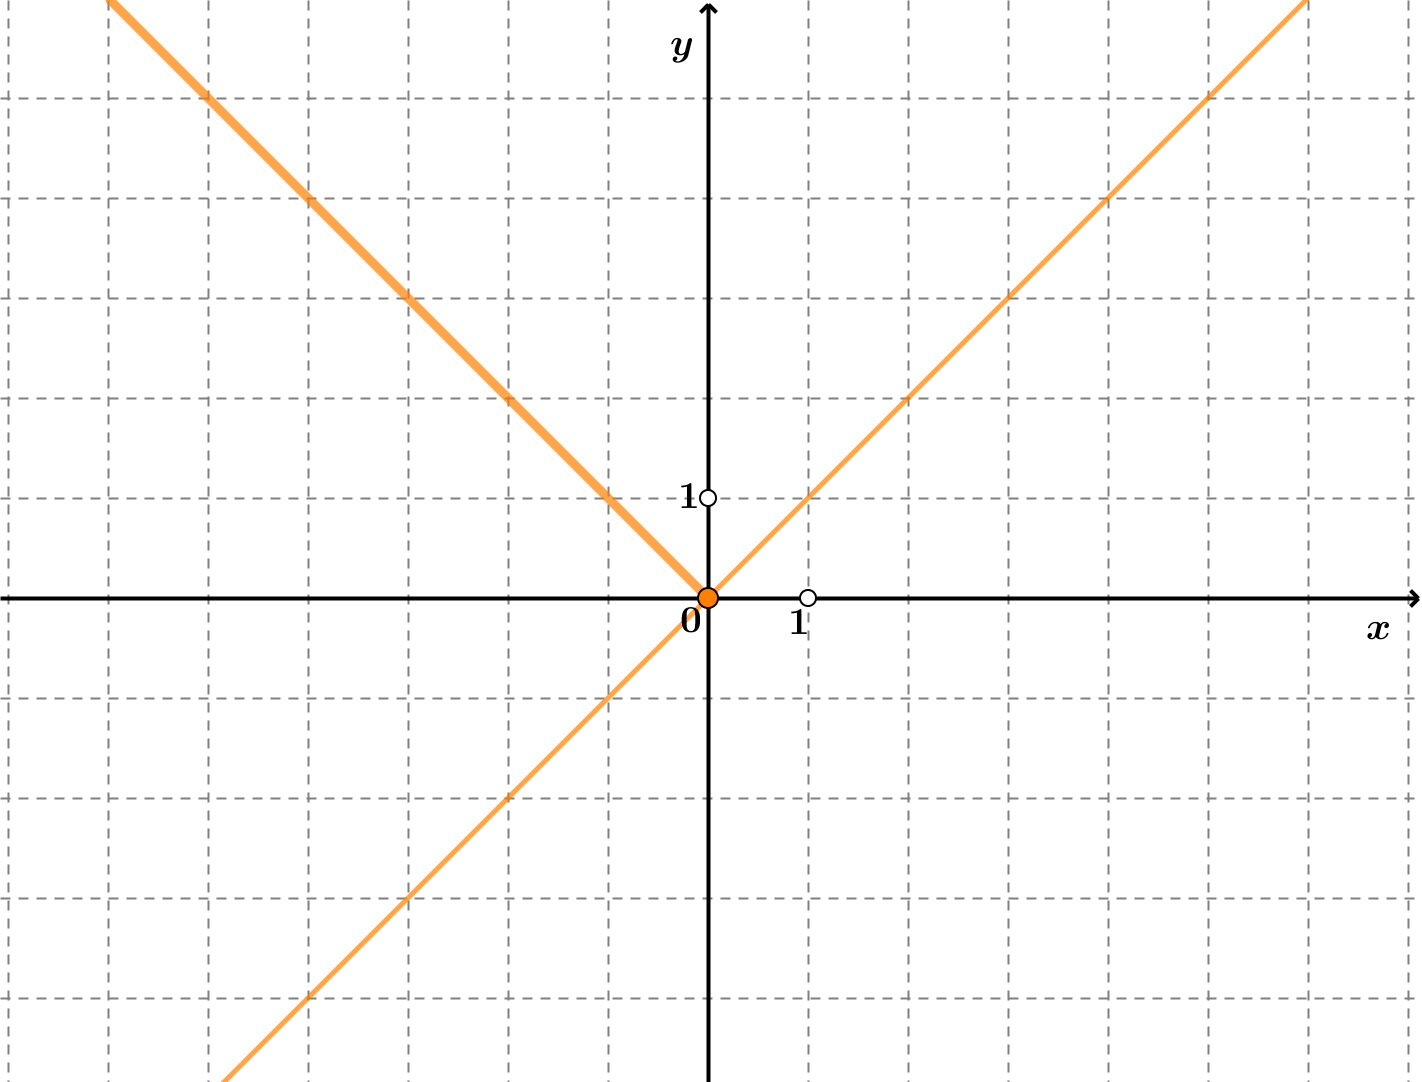 Na slici je docrtan i graf funkcije f(x)=x